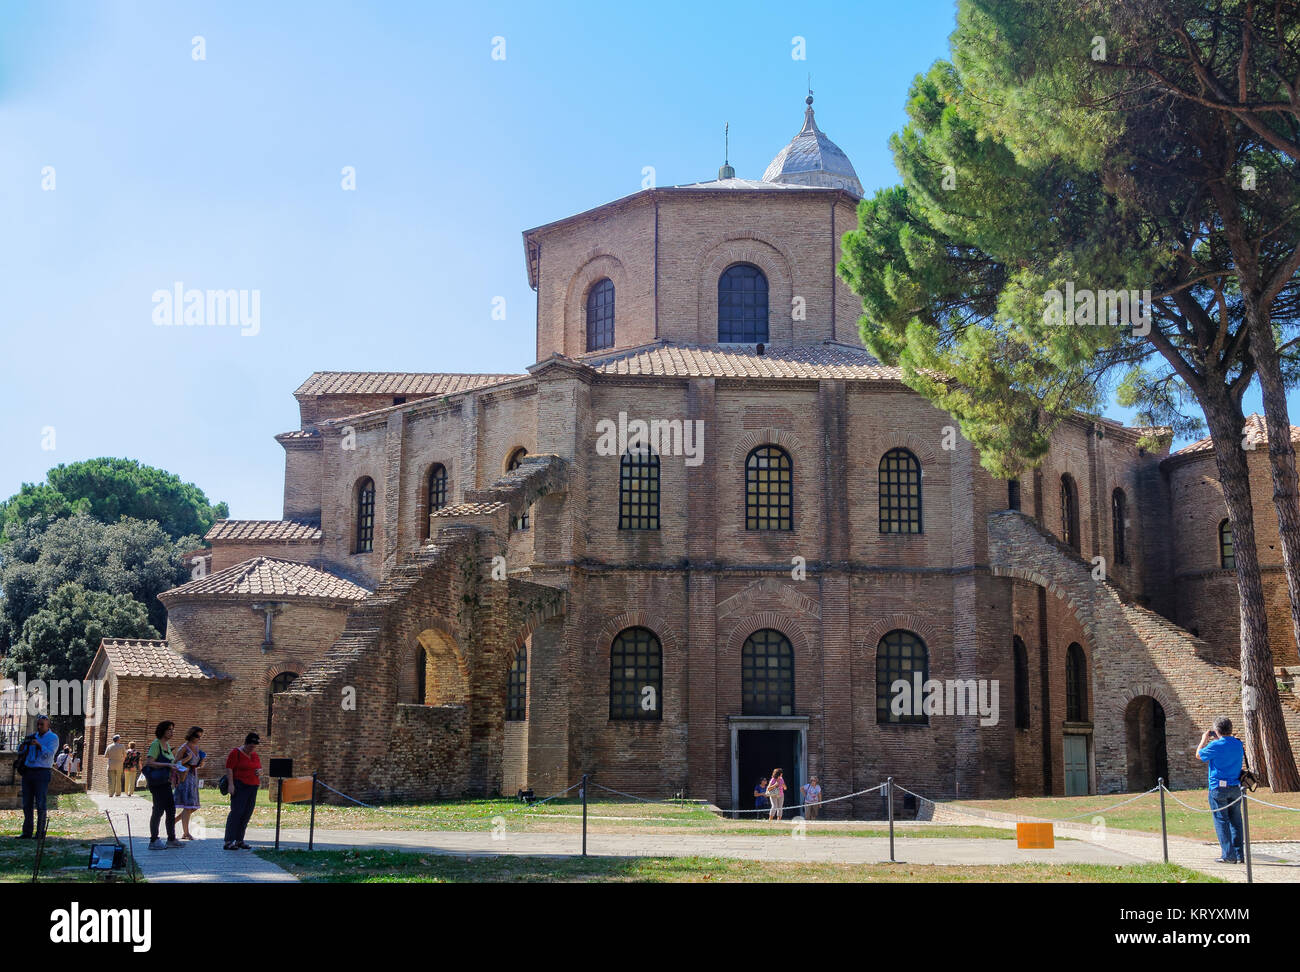 Ai turisti di ammirare un primo esempio di prima architettura cristiana, la pianta ottagonale Basilica di San Vitale - Ravenna, Italia Foto Stock